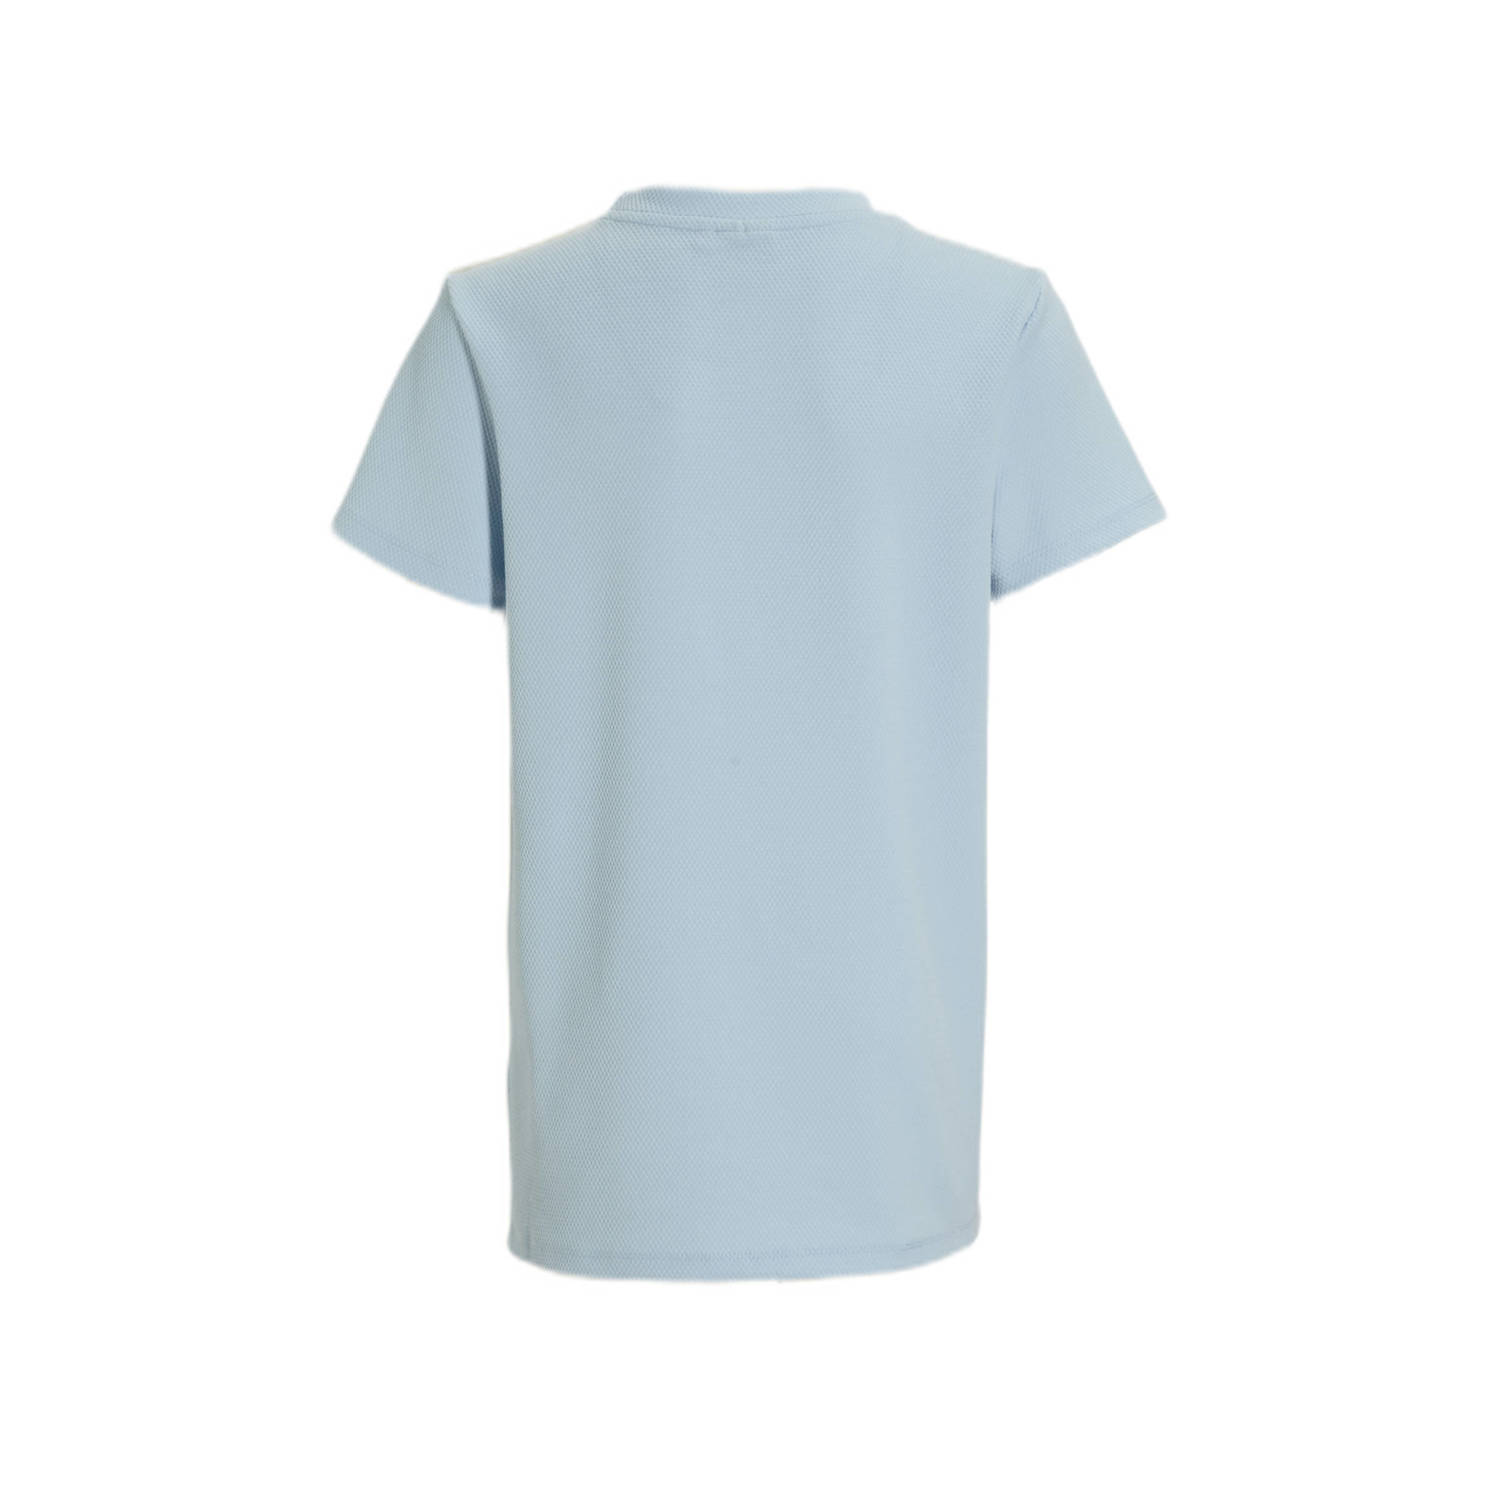 Bellaire T-shirt met printopdruk lichtblauw